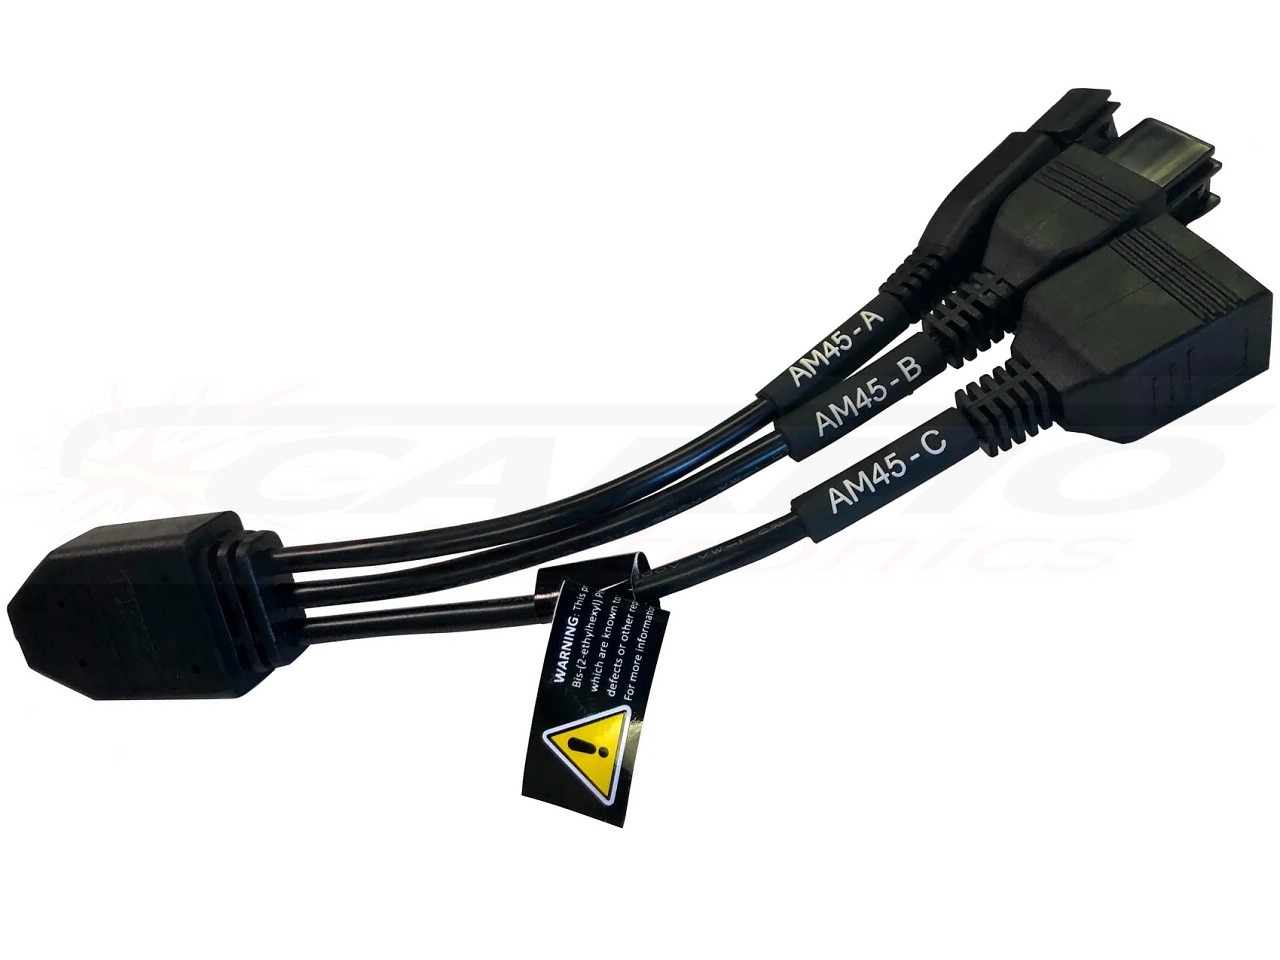 TEXA AM45 Cable for PWC KAWASAKI key registration, PWC Yamaha remote control registration - 3911923 - Click Image to Close